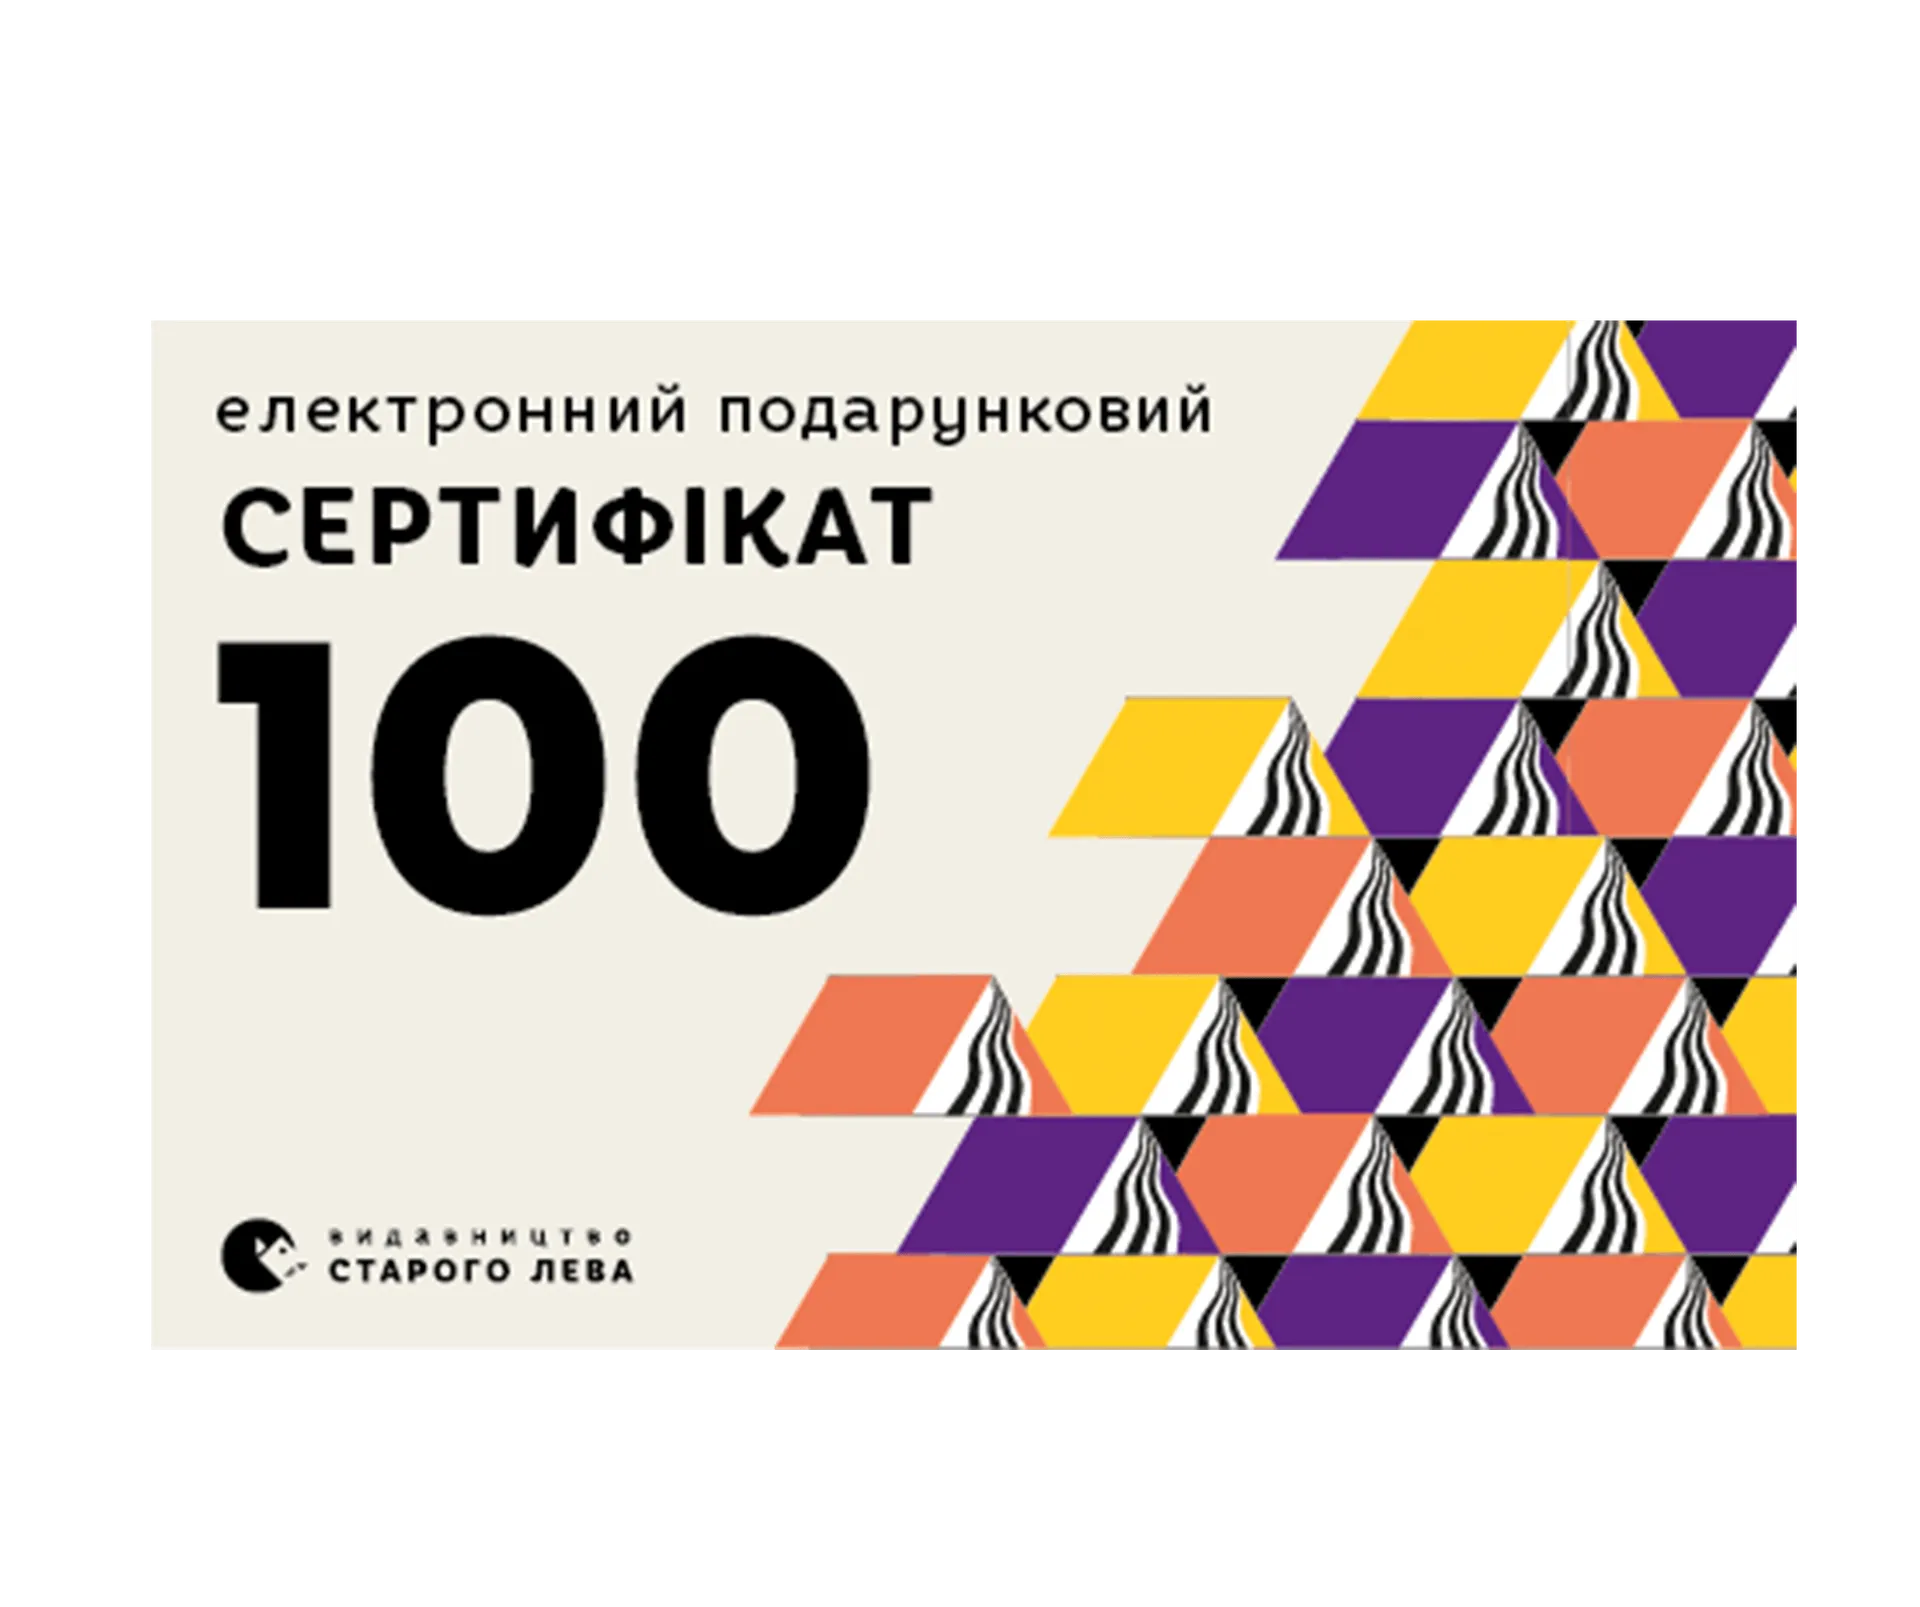 Електронний подарунковий сертифікат на суму 100 грн.